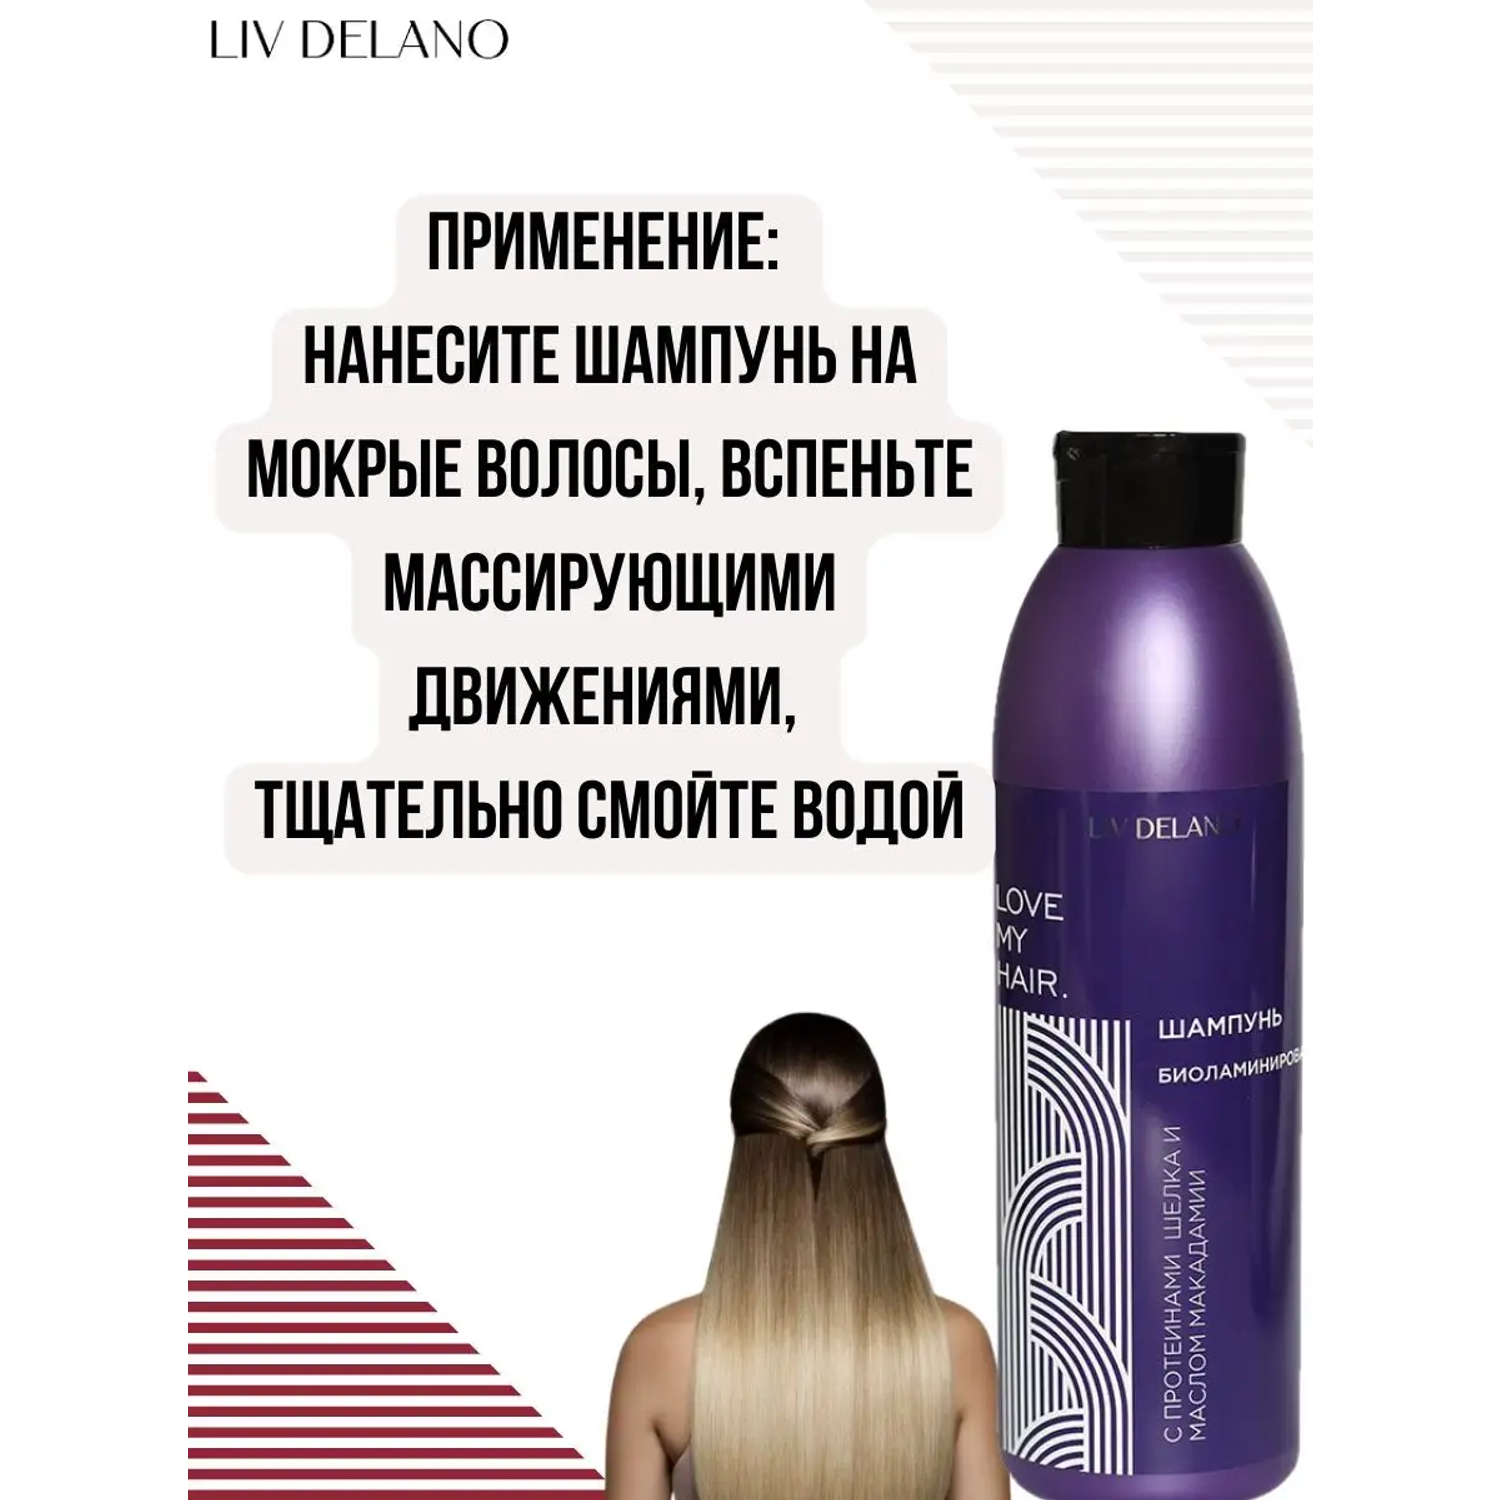 Шампунь для волос LIV DELANO Love my hair Биоламинирование С протеинами шелка и маслом макадамии 1000мл - фото 5